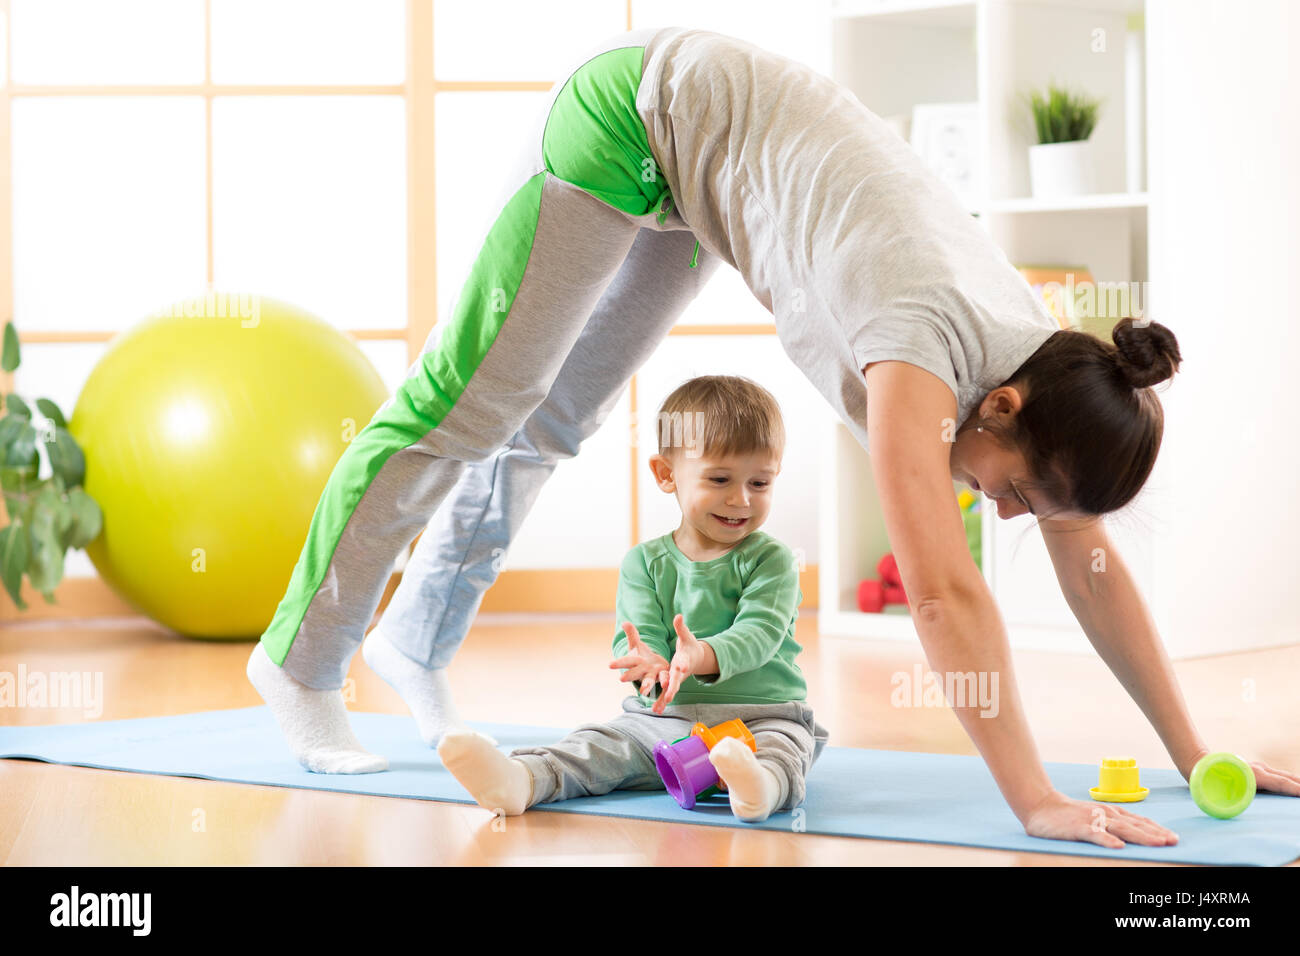 Madre haciendo yoga o ejercicios físicos con el bebé Foto de stock